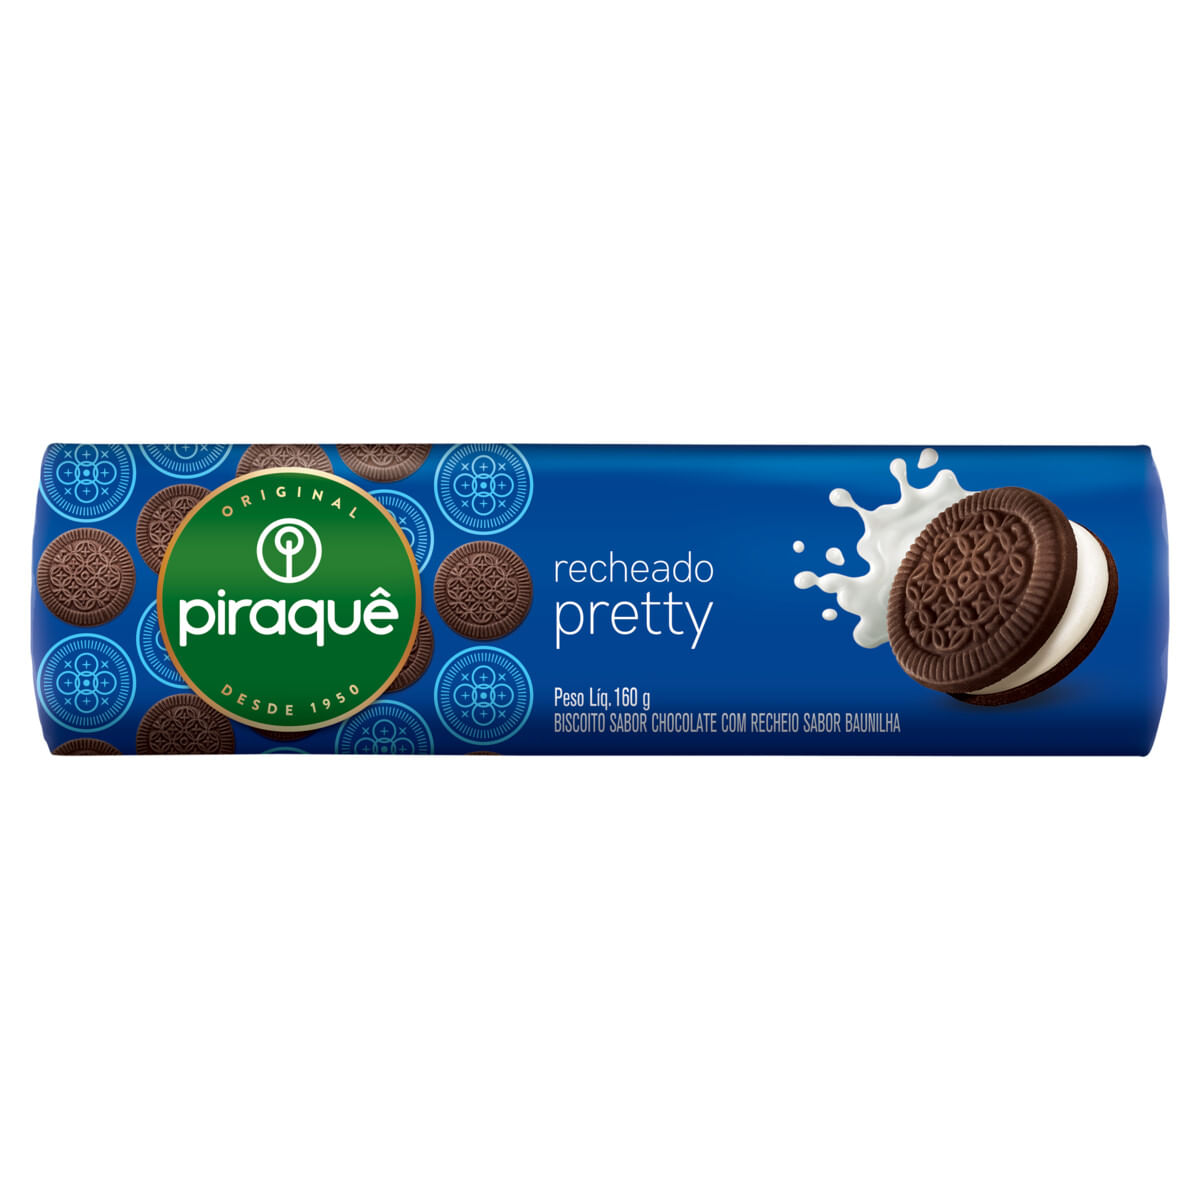 biscoito-chocolate-recheio-pretty-piraque-160g-1.jpg